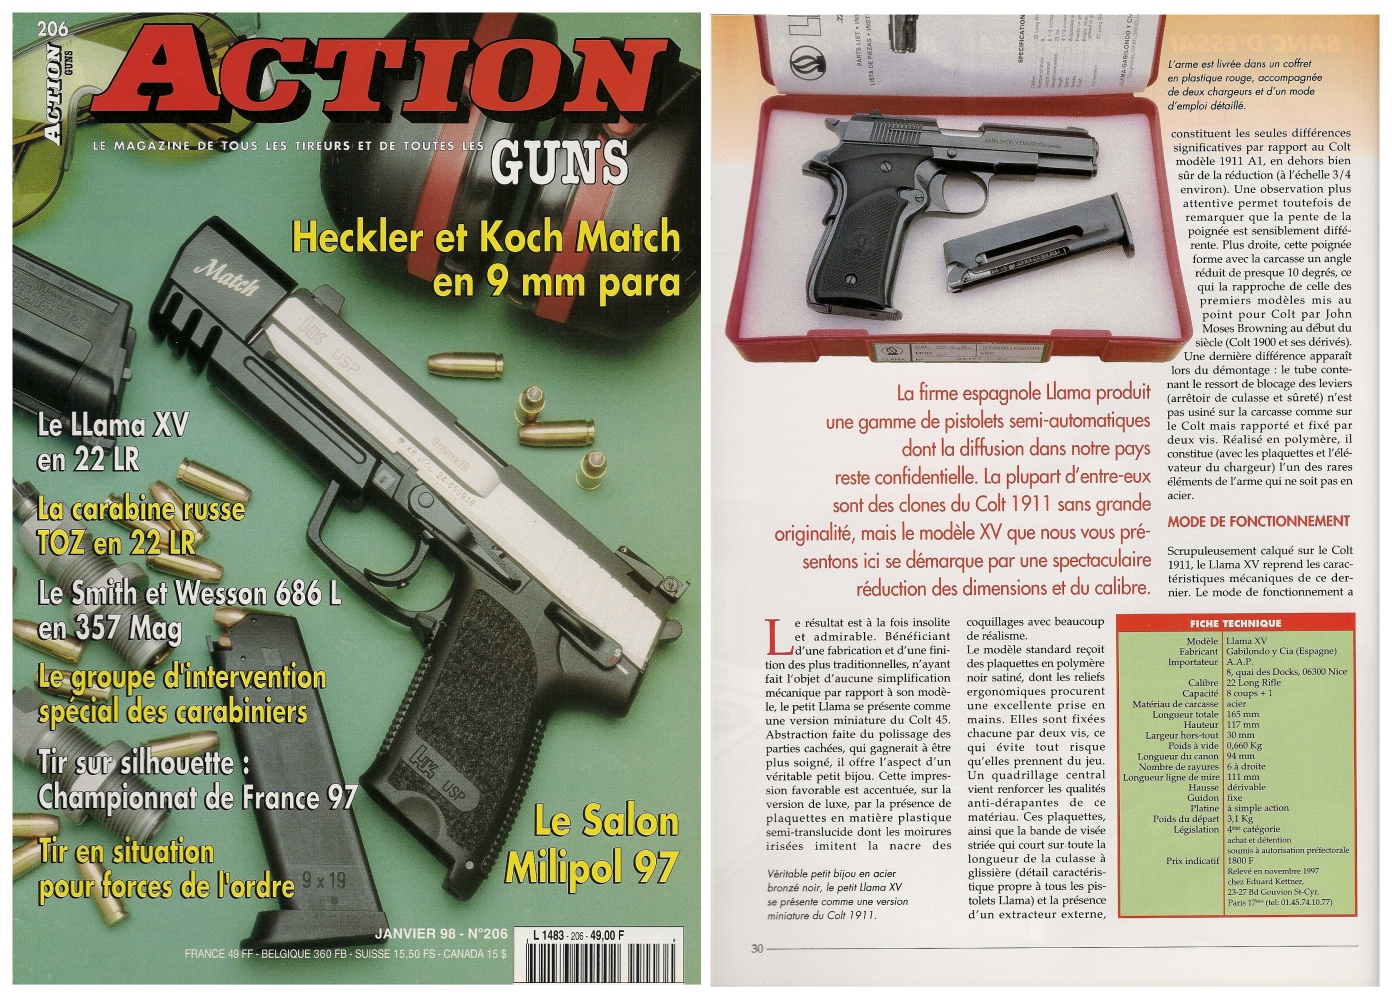 Le banc d'essai du pistolet Llama XV a été publié sur 6 pages dans le magazine Action Guns n° 206 (janvier 1998).